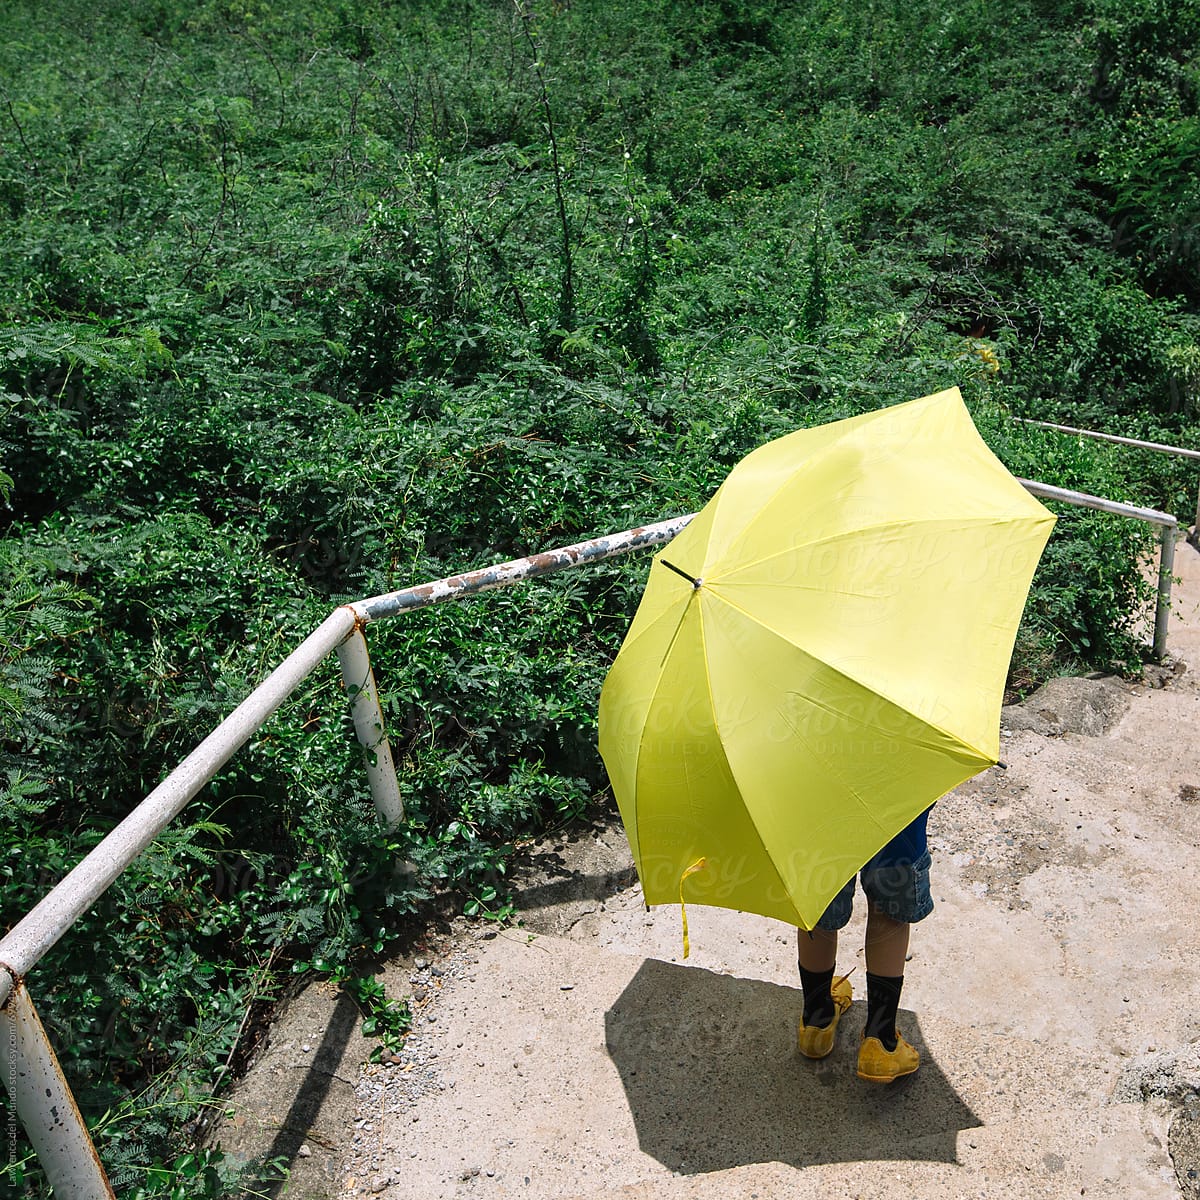 Follow the yellow umbrella